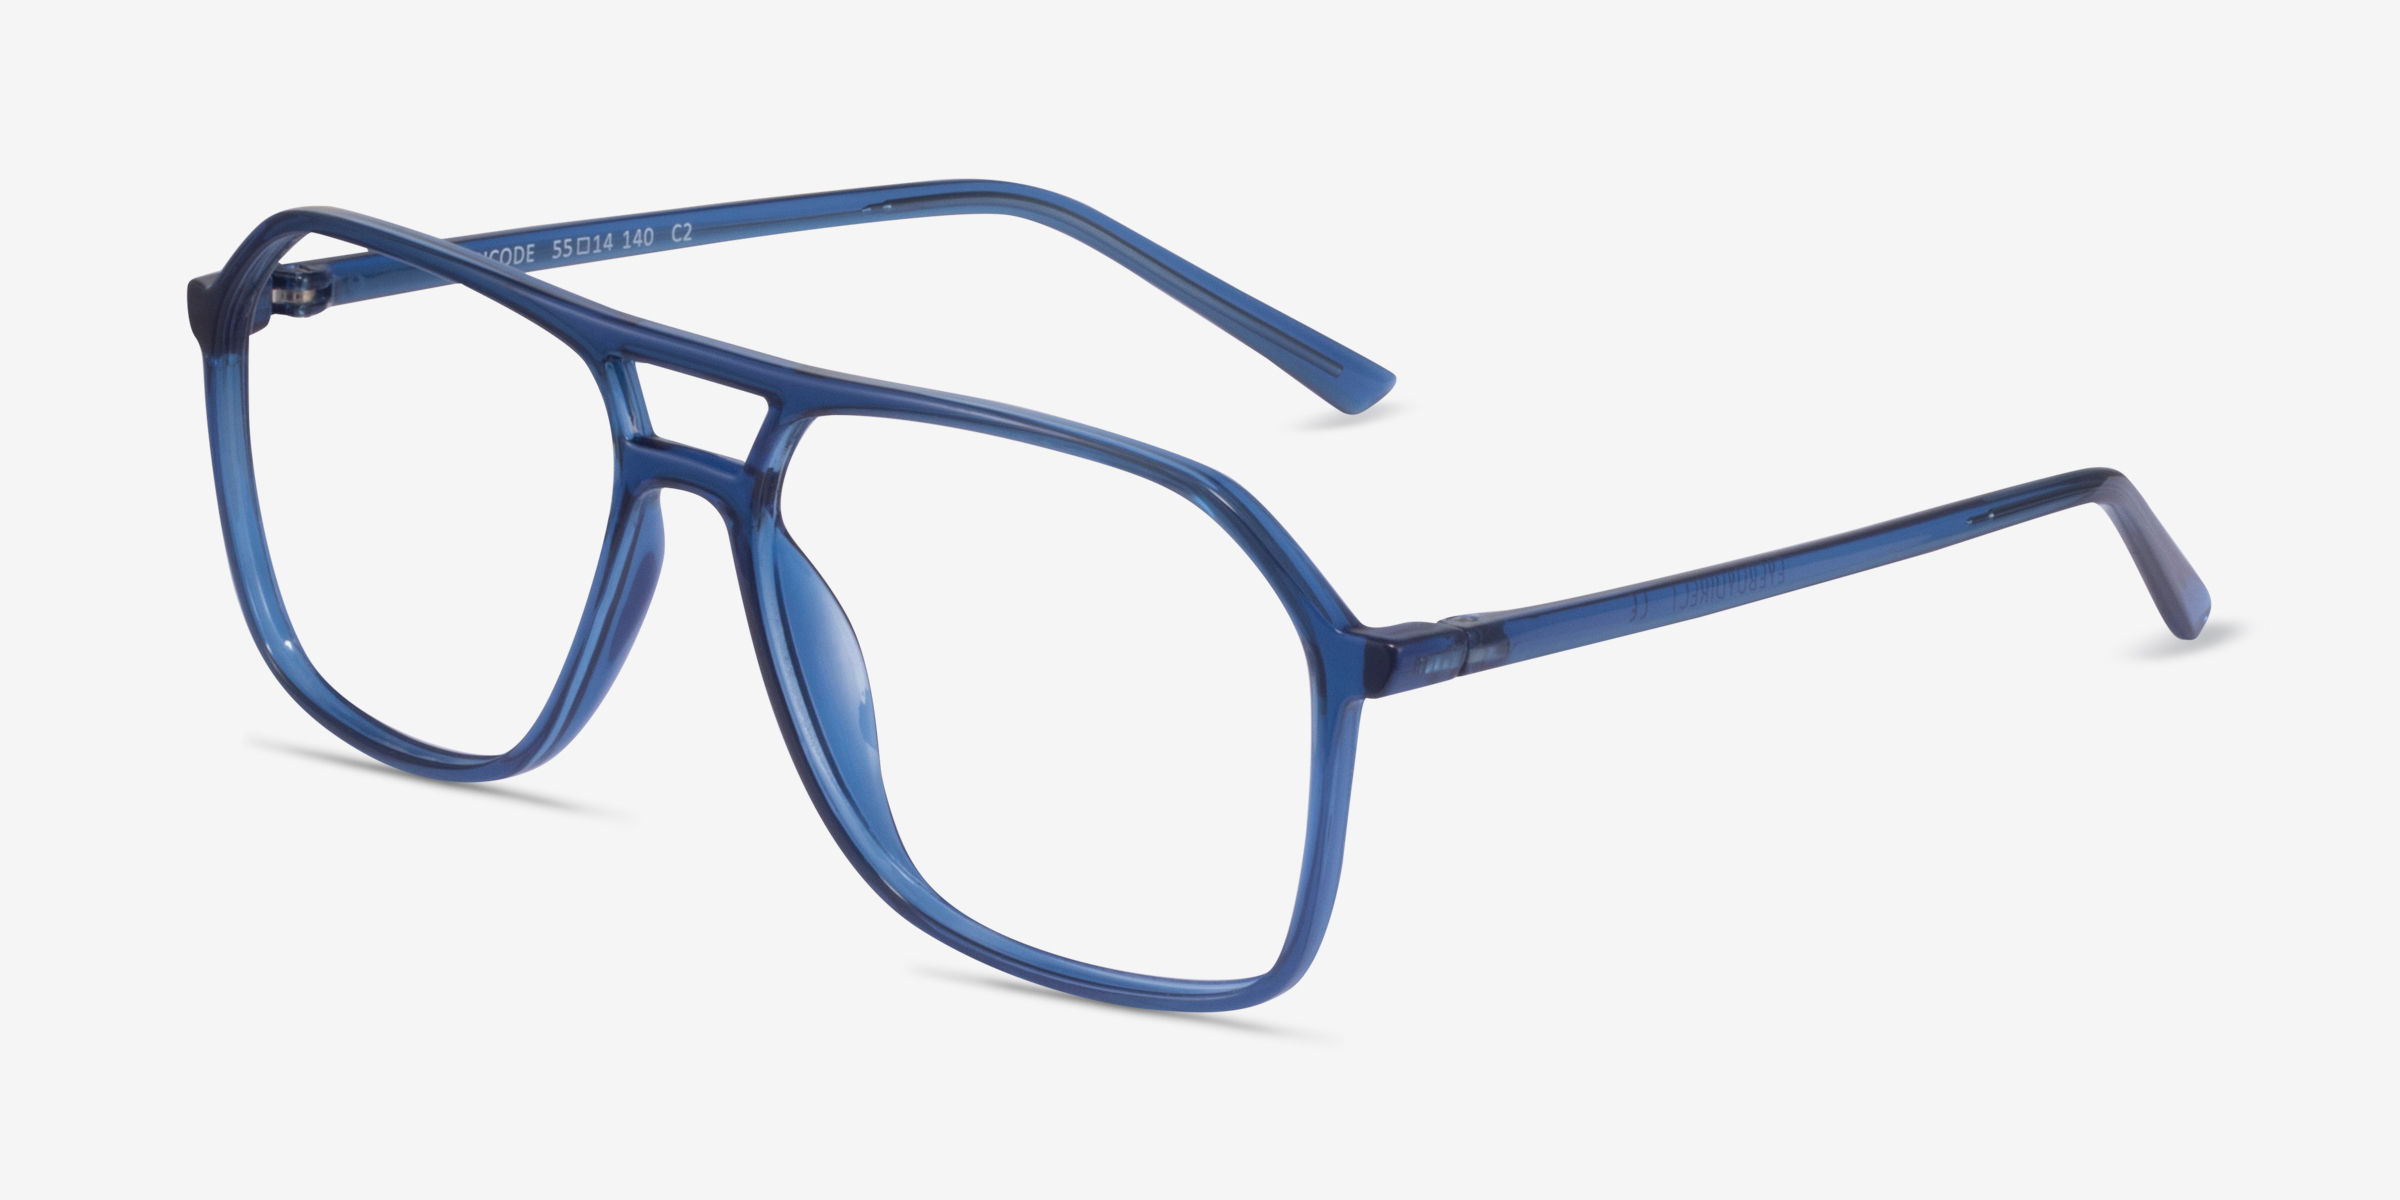 Encode Aviator Clear Navy Glasses for Men | Eyebuydirect